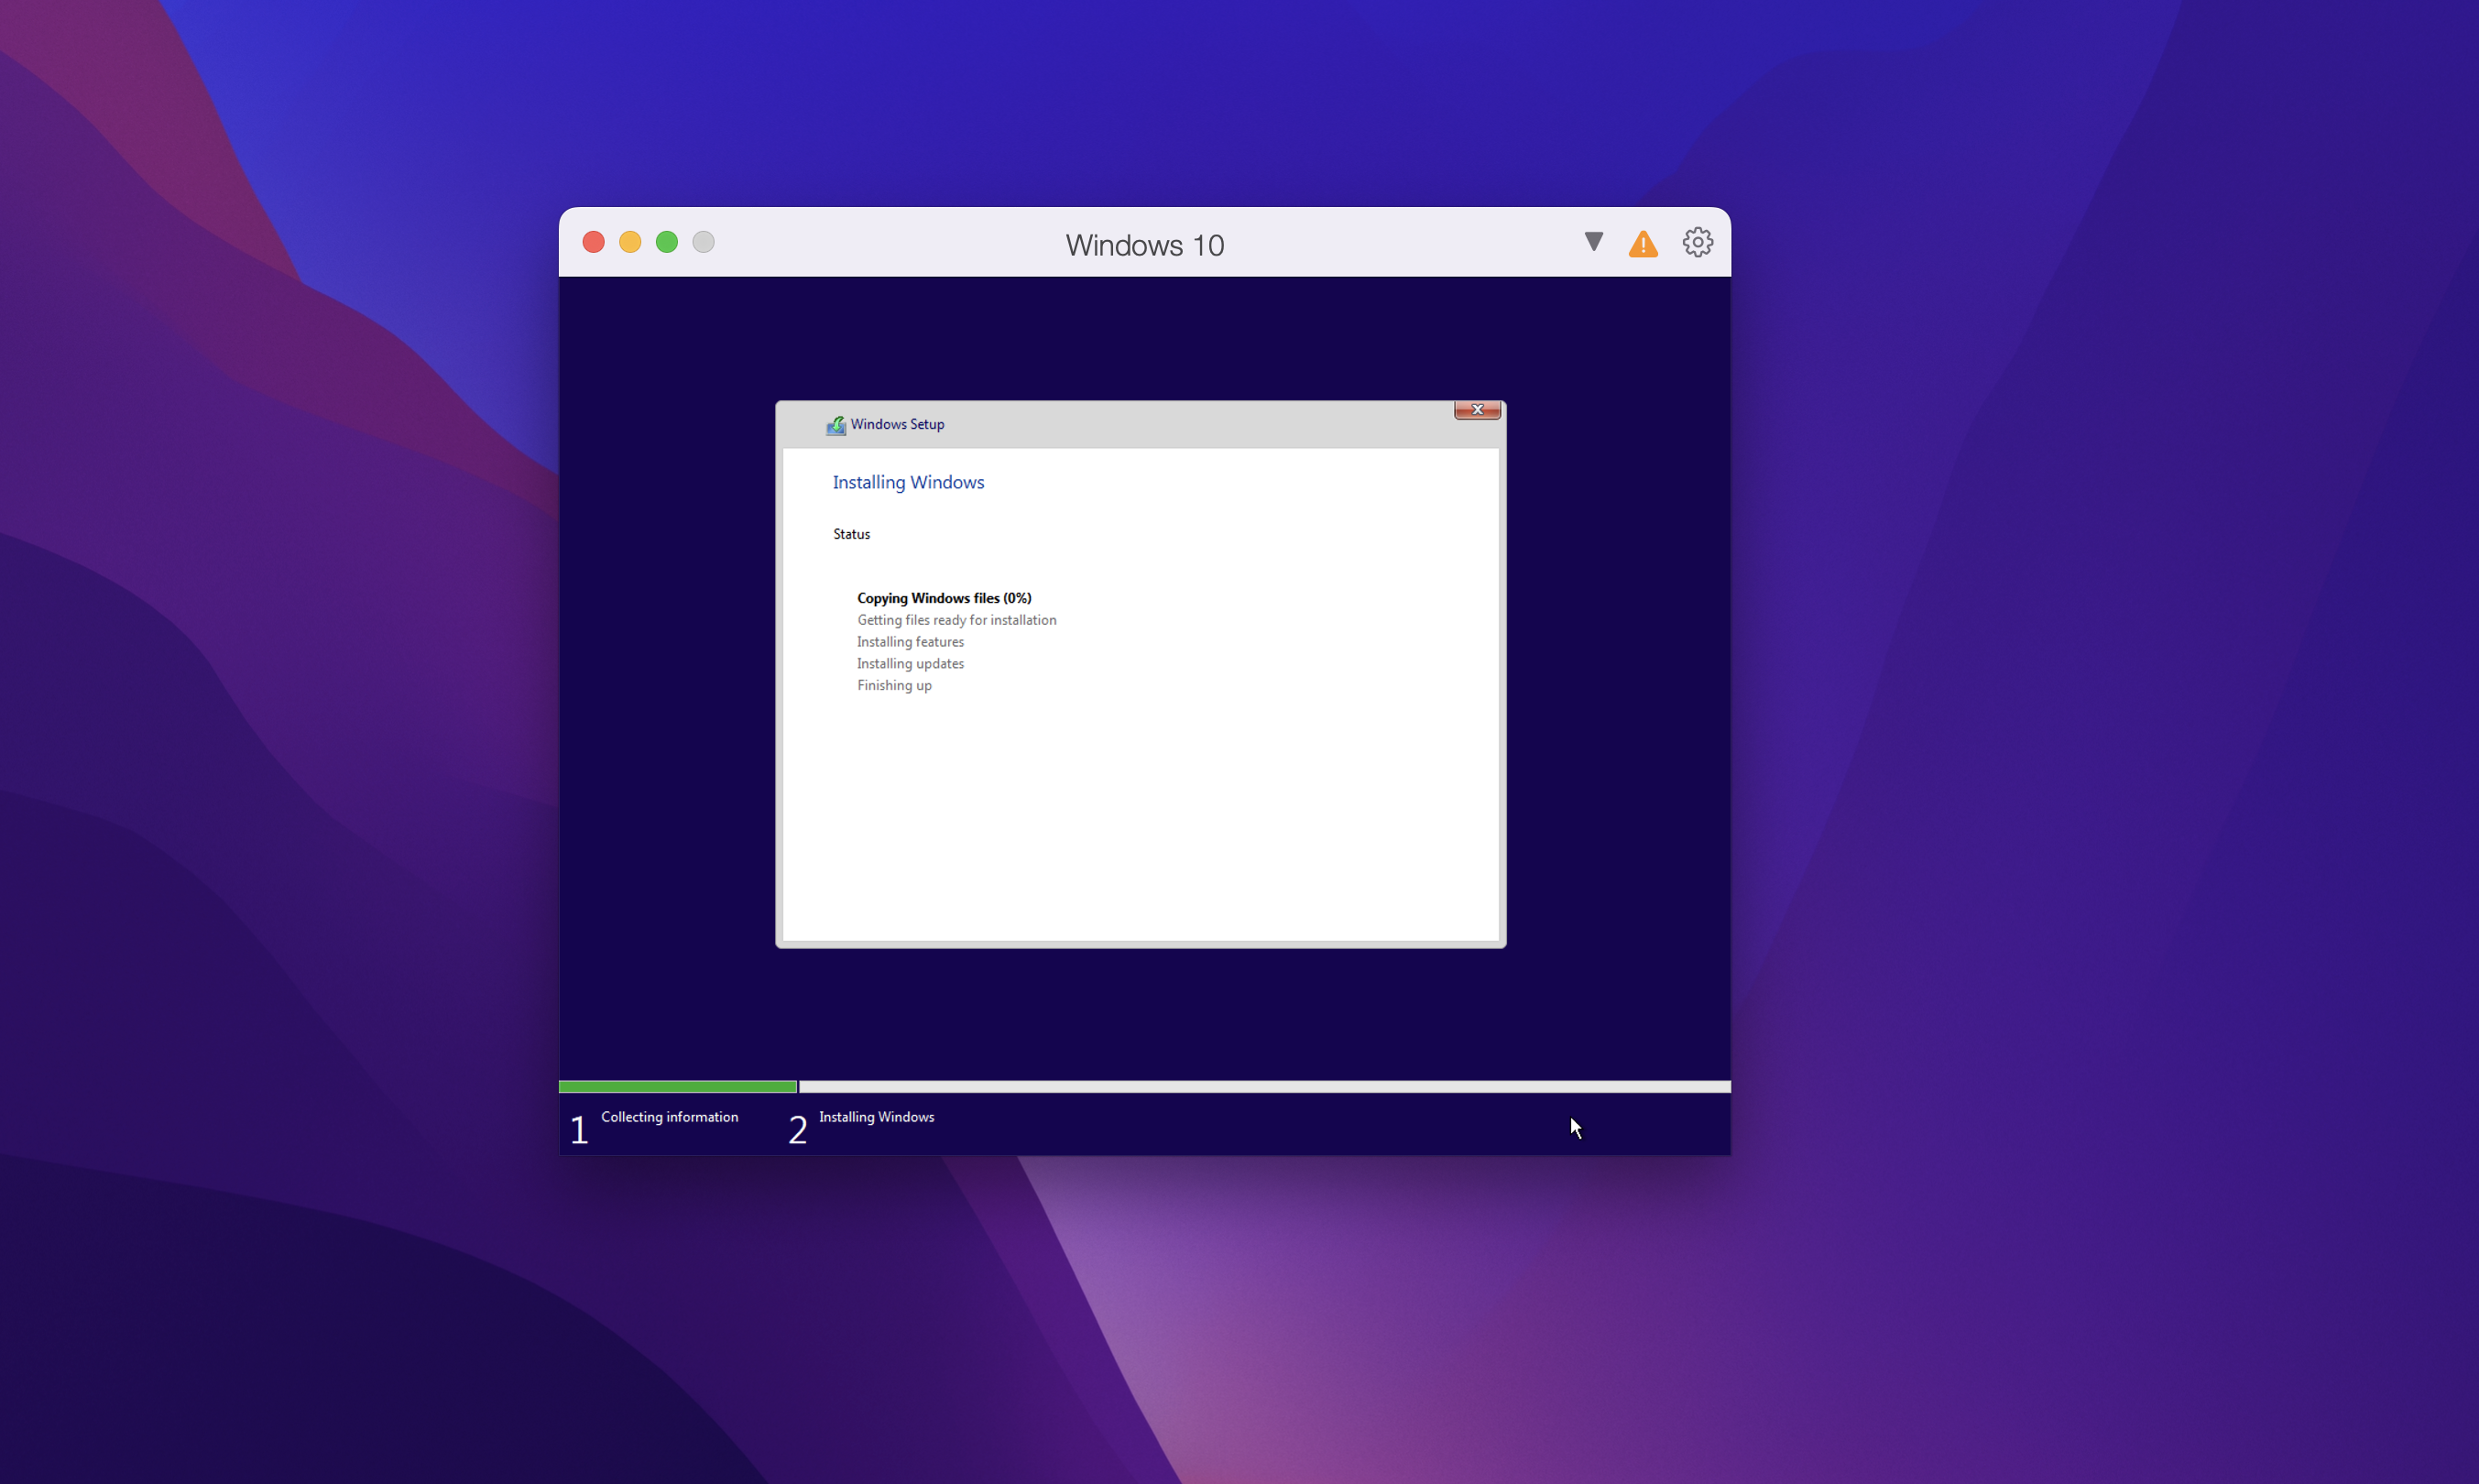 Tải Parallels Desktop for Mac bản 17 Full bản quyền – Hỗ trợ cài Windows trên Mac bản mới nhất 25